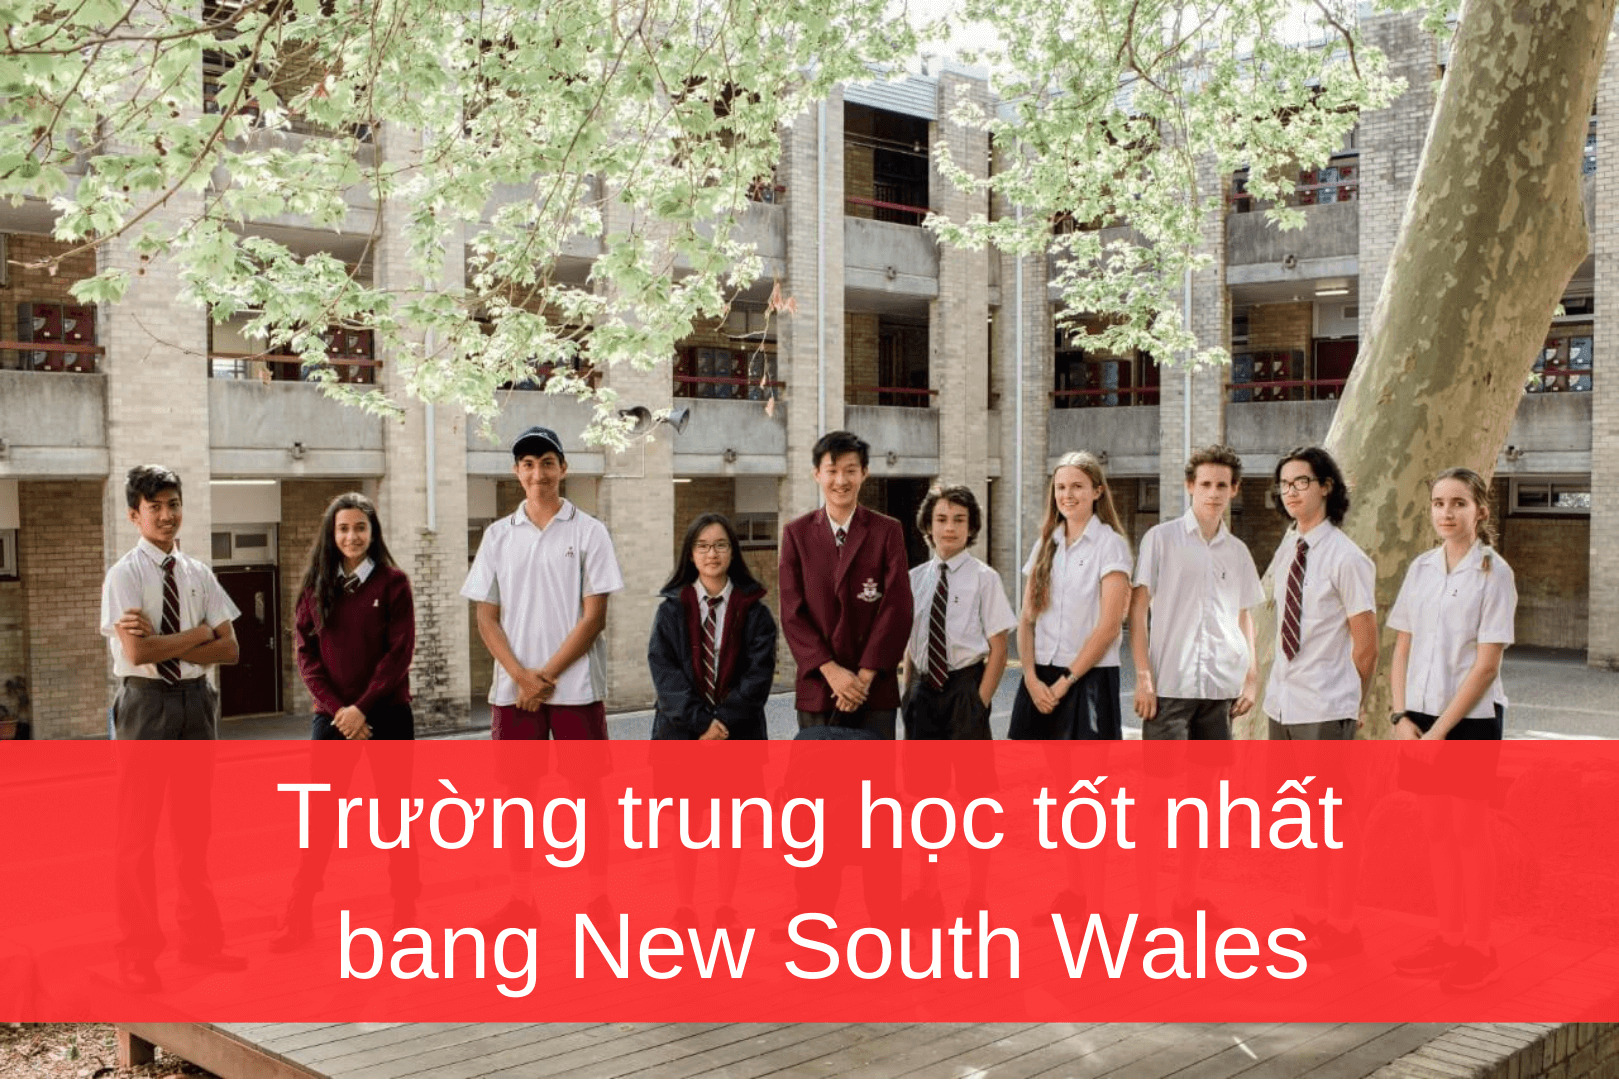 TOP 10 trường trung học bang New South Wales được đánh giá cao